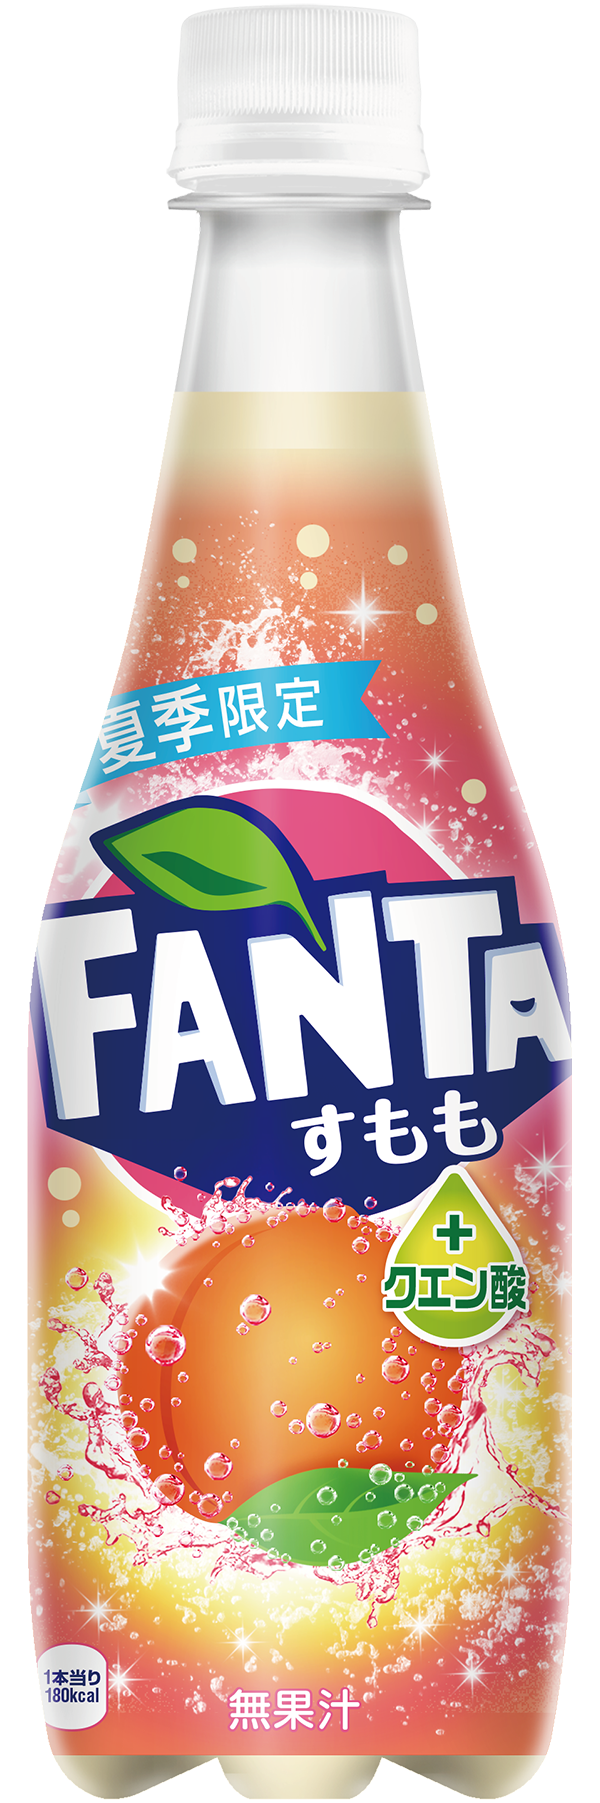 ファンタ Fanta Official Site